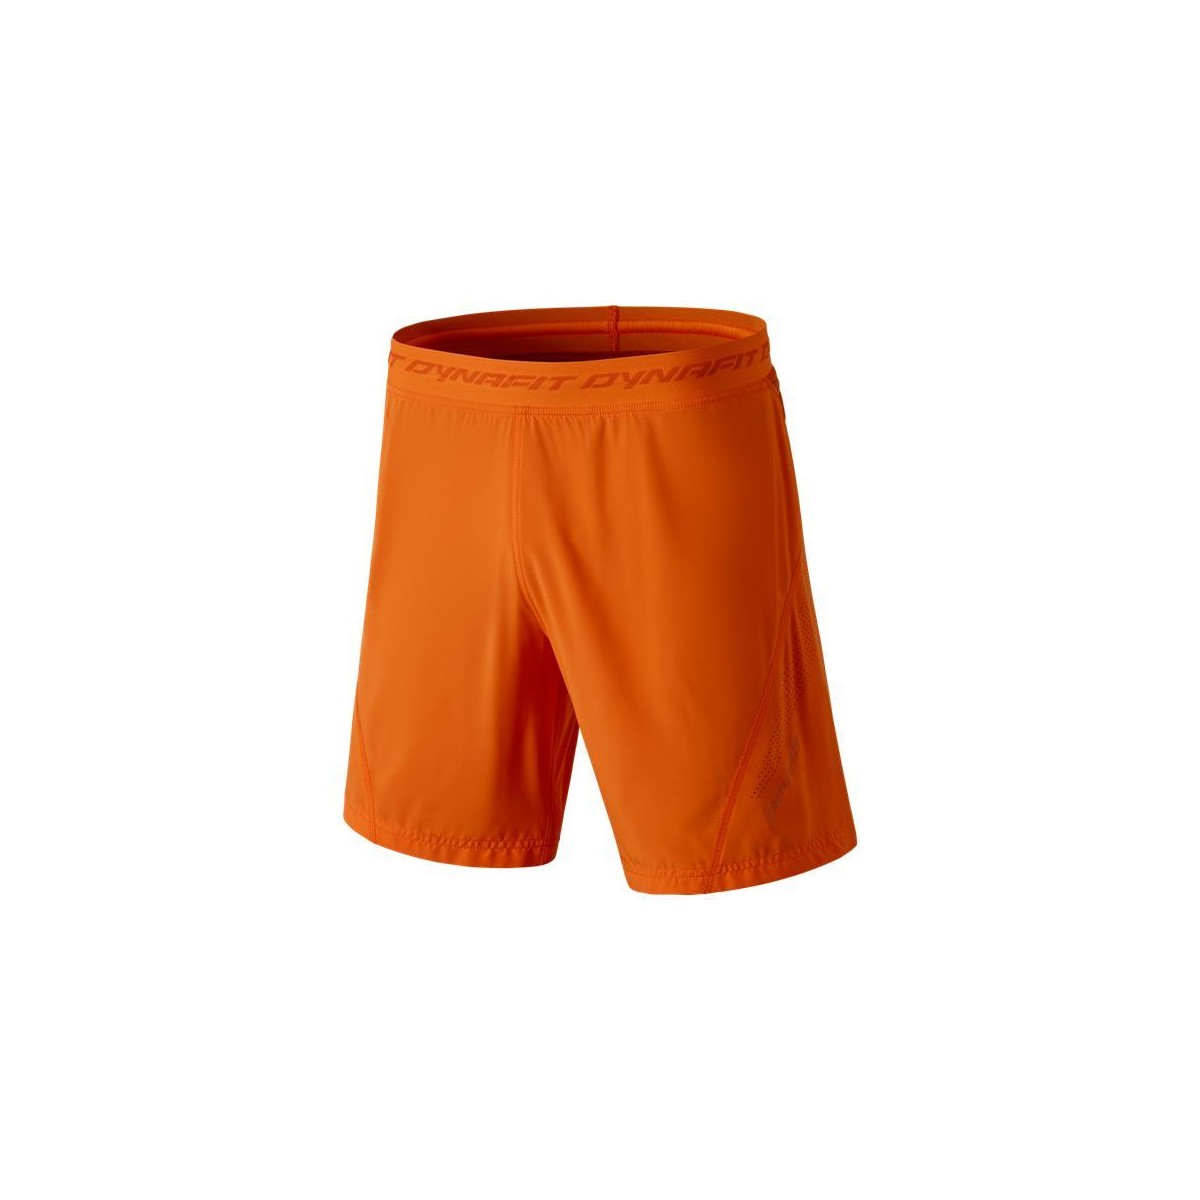 Oblačila Moški Kratke hlače & Bermuda Dynafit React 2 Dst M 2/1 Shorts 70674-4861 Oranžna